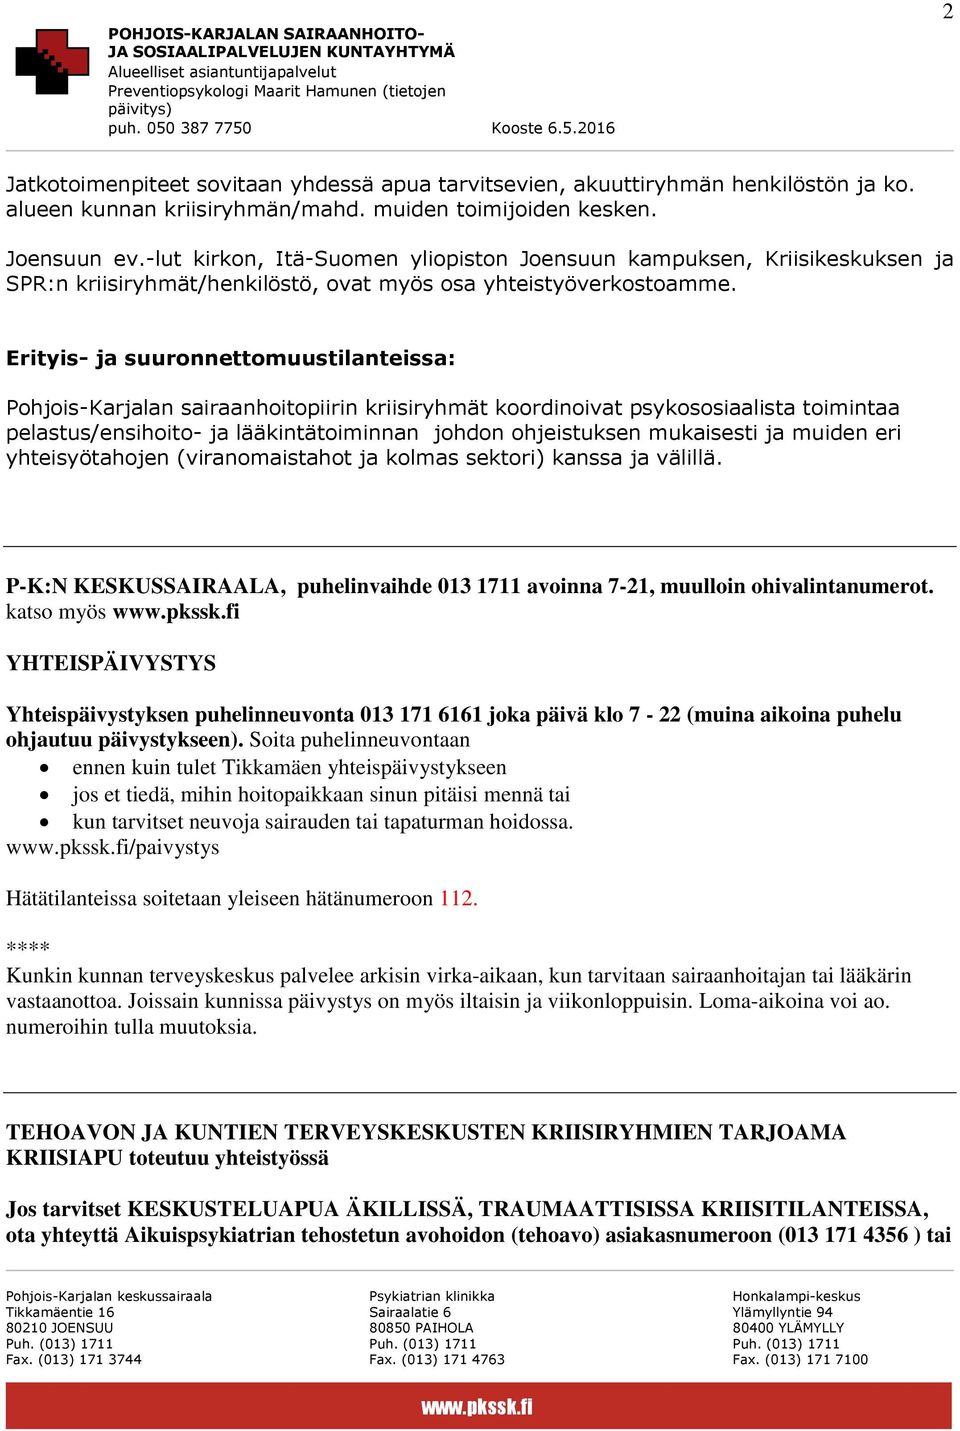 Erityis- ja suuronnettomuustilanteissa: Pohjois-Karjalan sairaanhoitopiirin kriisiryhmät koordinoivat psykososiaalista toimintaa pelastus/ensihoito- ja lääkintätoiminnan johdon ohjeistuksen